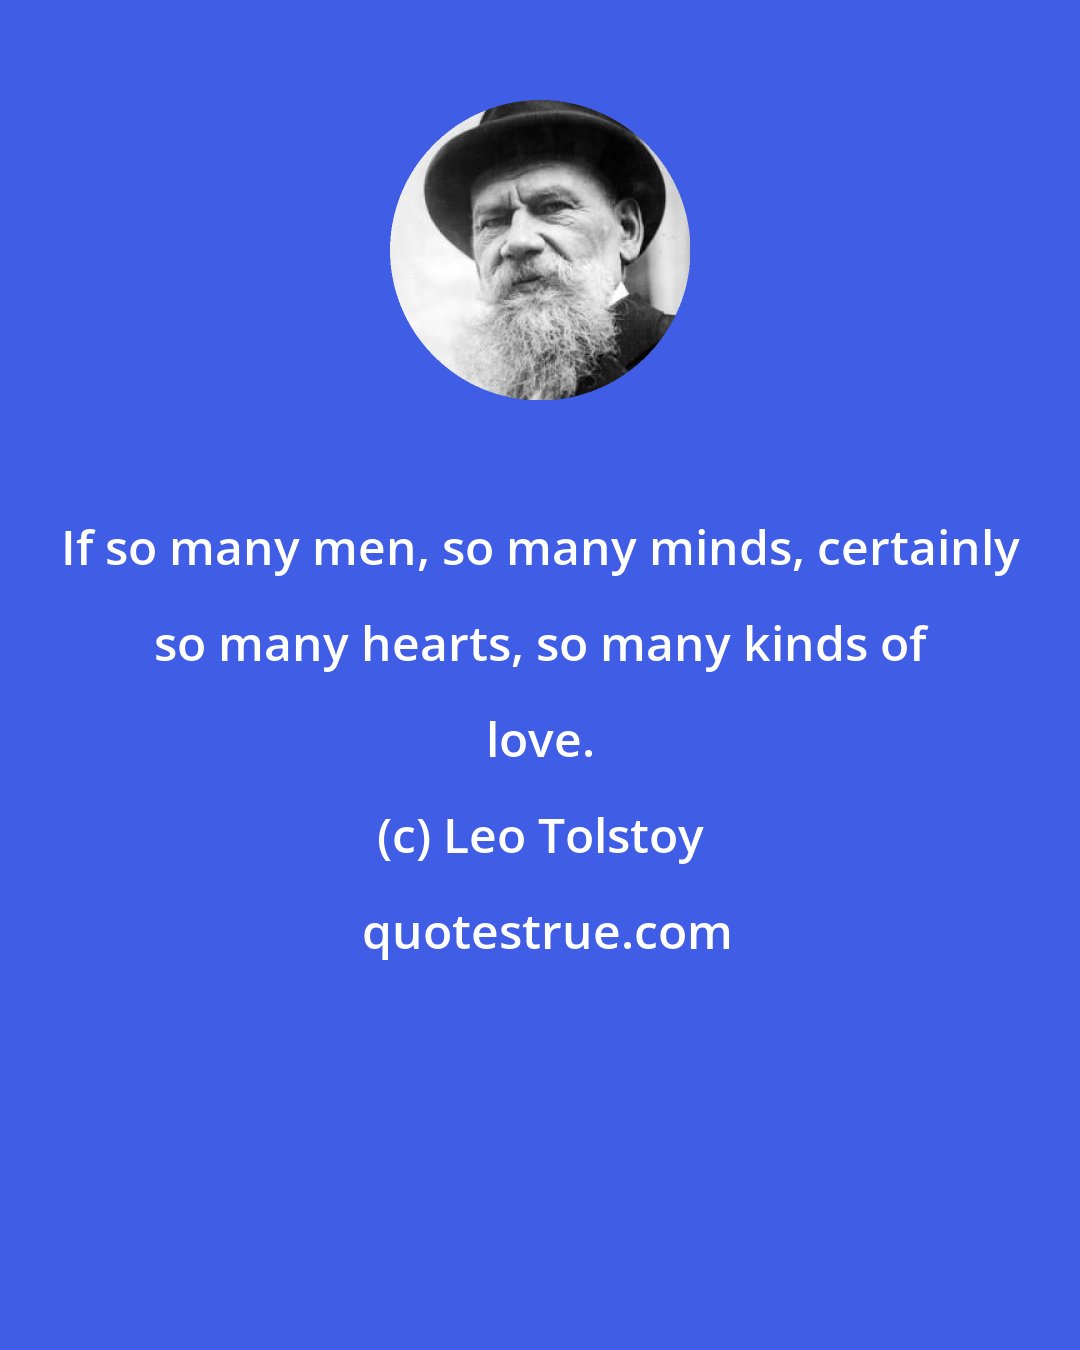 Leo Tolstoy: If so many men, so many minds, certainly so many hearts, so many kinds of love.